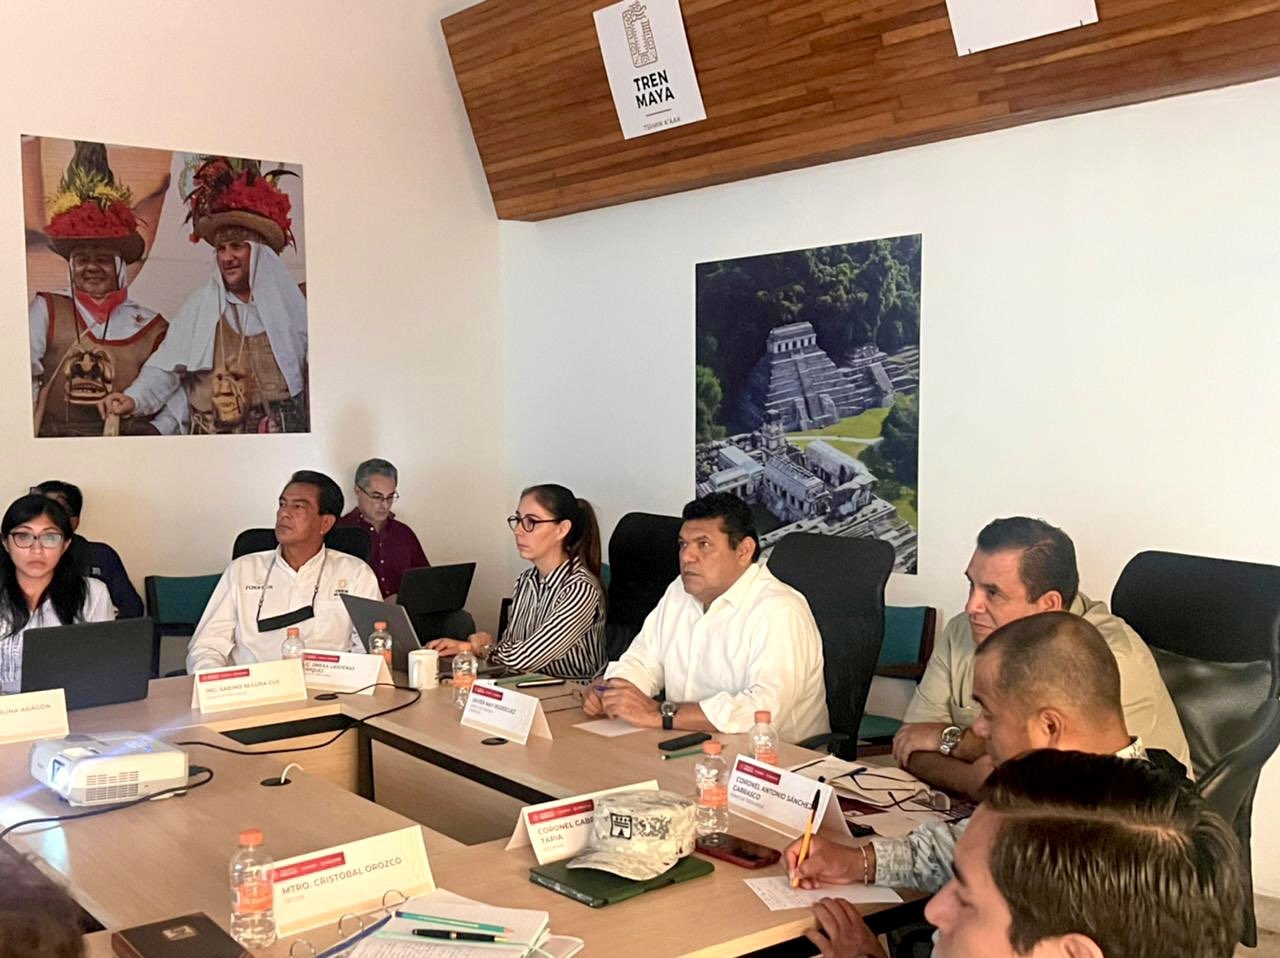 Javier May estuvo acompañado de Antonio Sánchez Carrasco, director de Fonatur Tren Maya durante su visita a Cancún